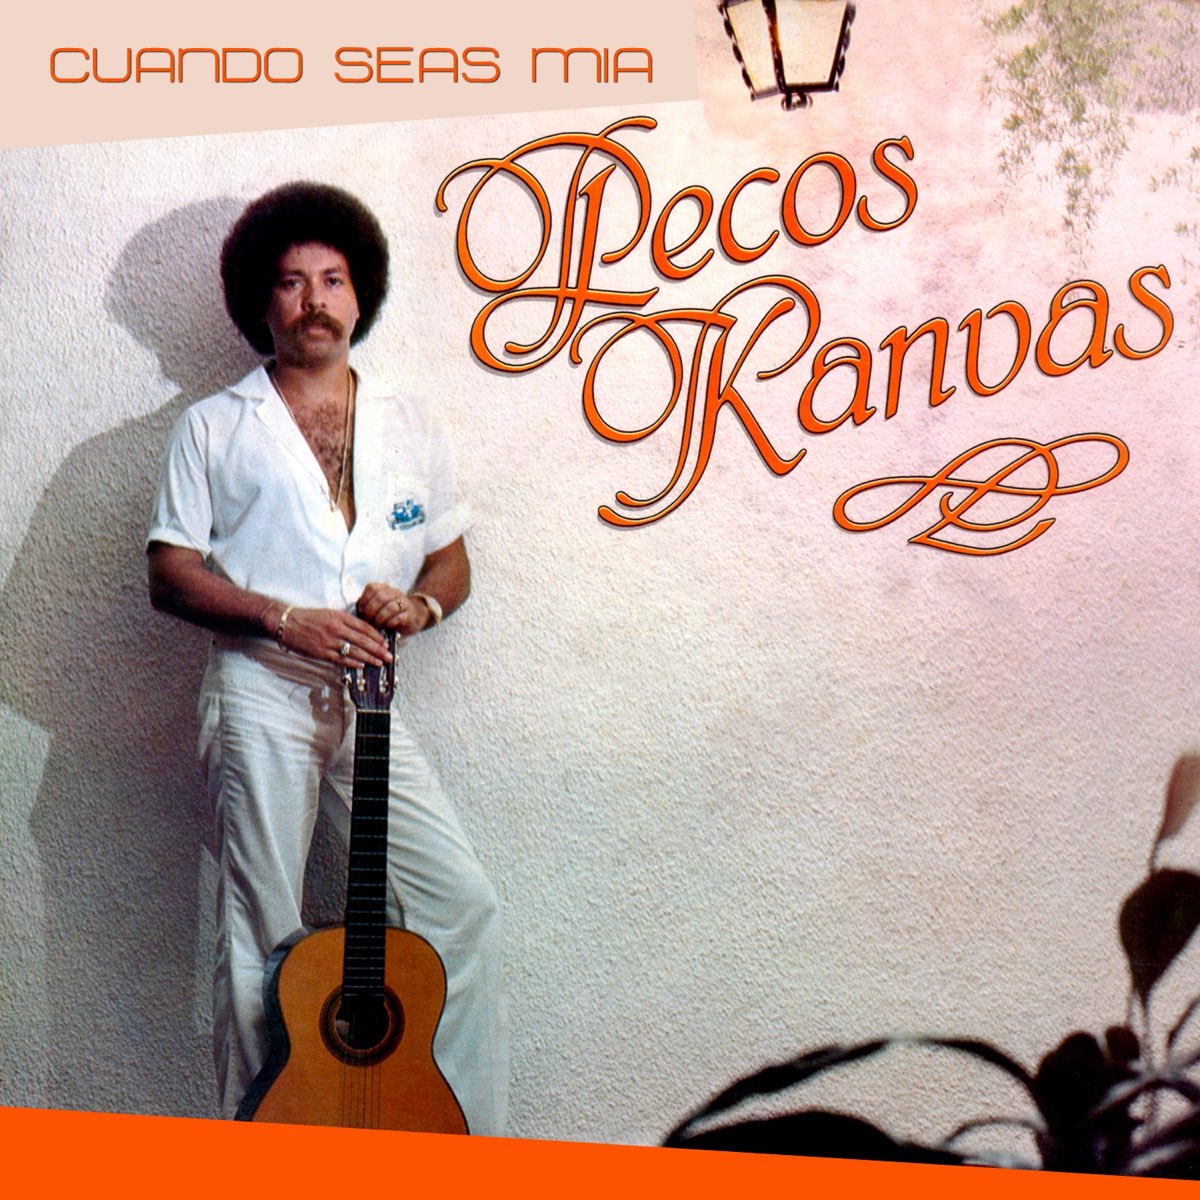 Cuando Seas Mía by Pecos Kanvas on Apple Music